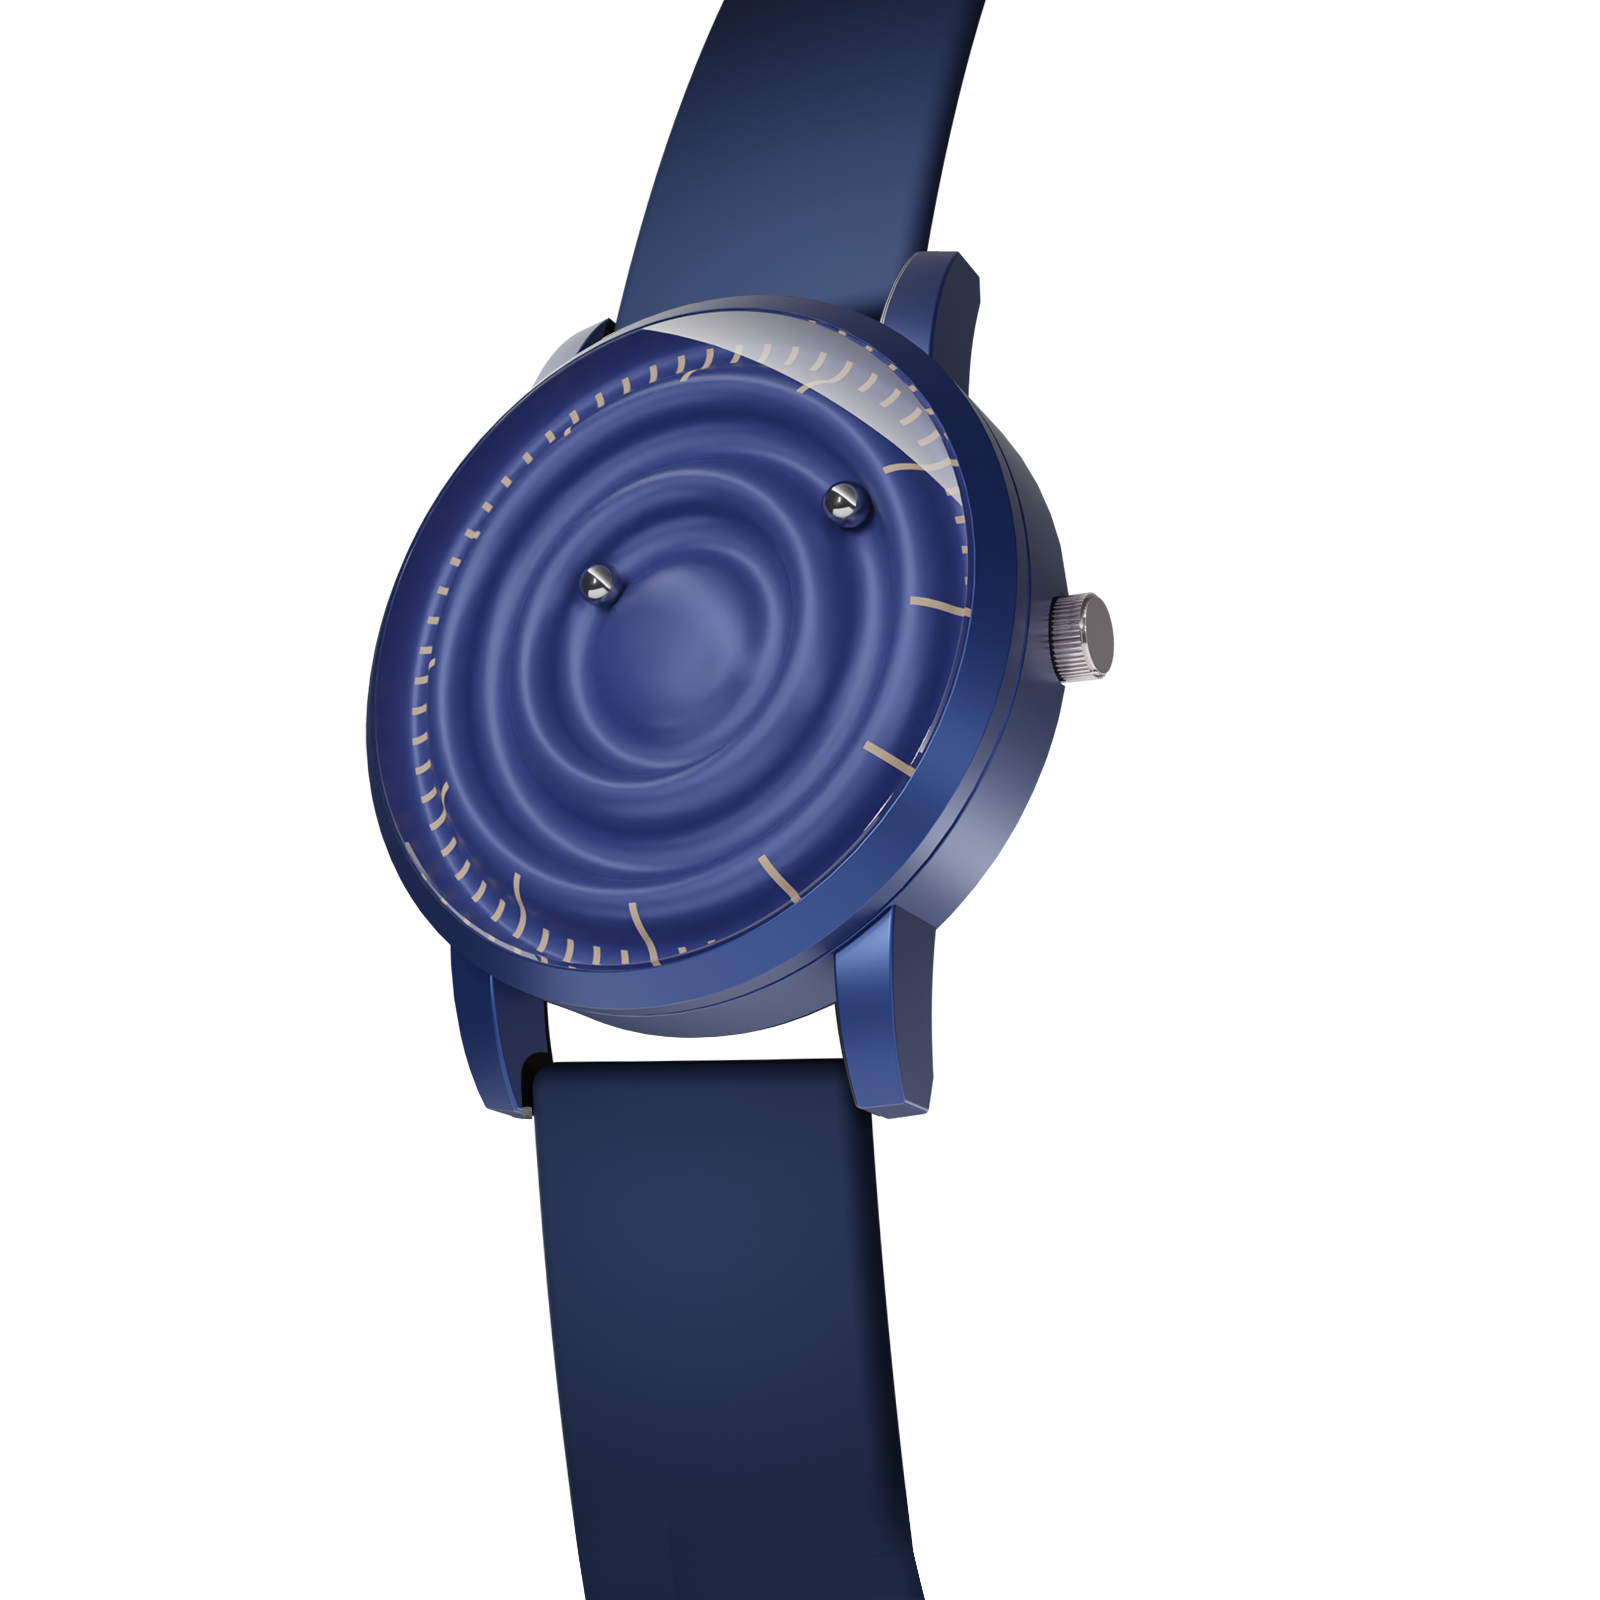 Magneto-Watch-Wave-Blue-Silikon-Blau-Side